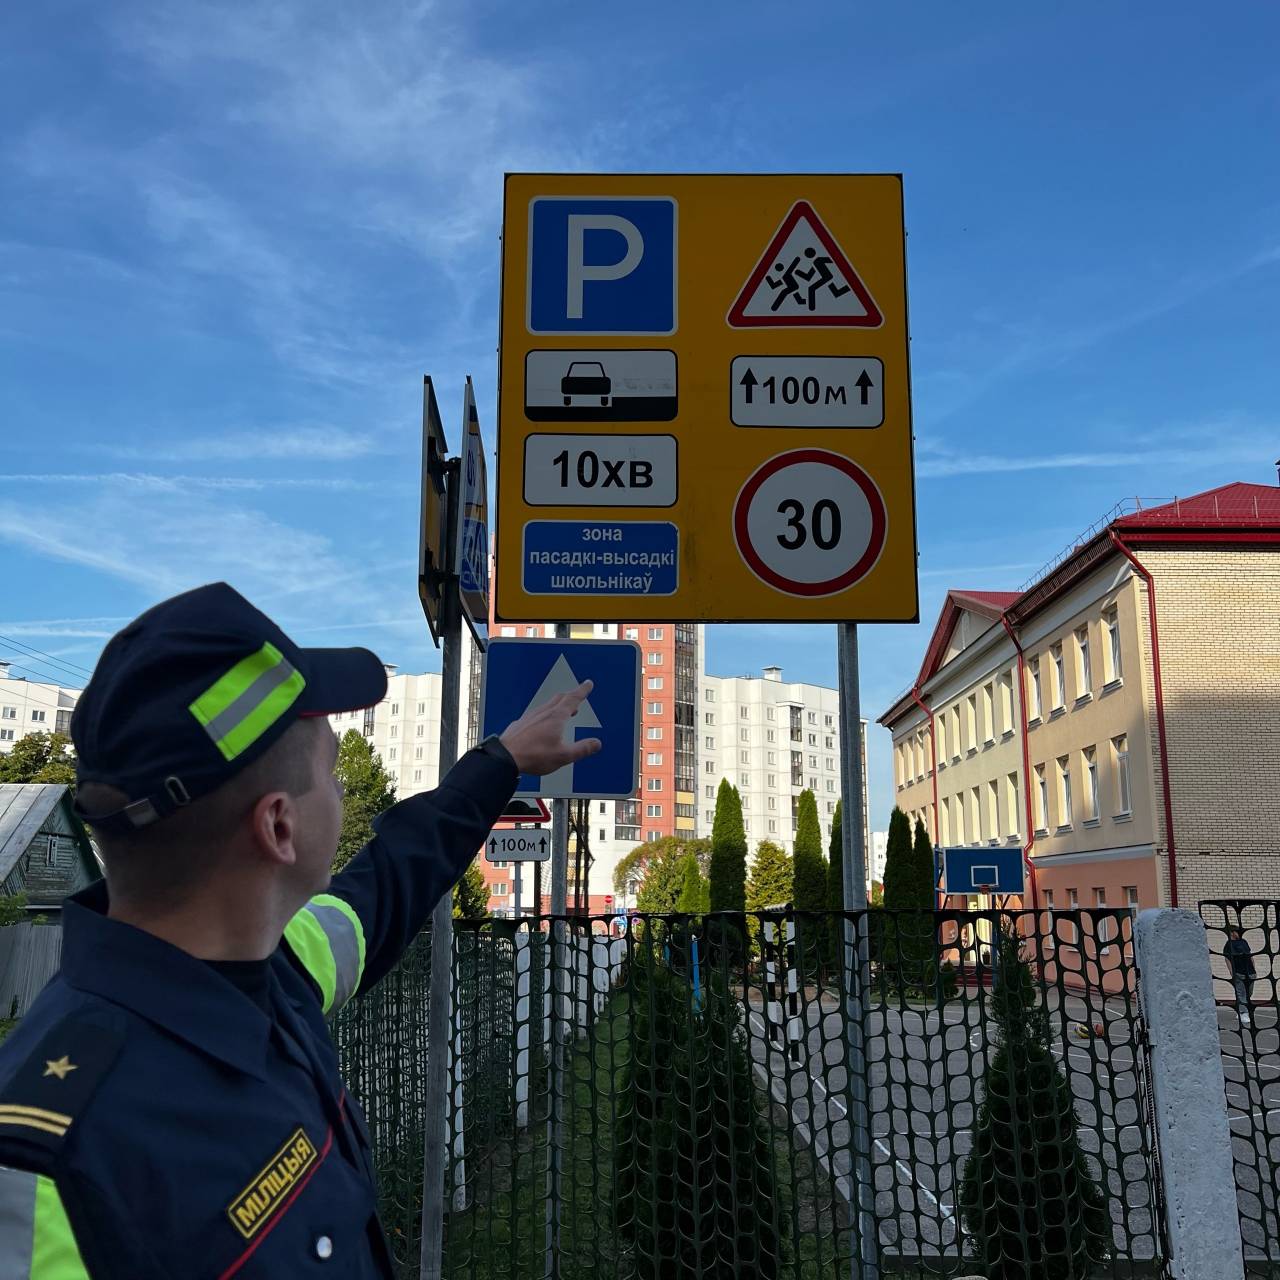 Запрет поворота, одностороннее движение, ограничение парковки: у 13-ой школы в Гродно большие изменения в организации дорожного движения